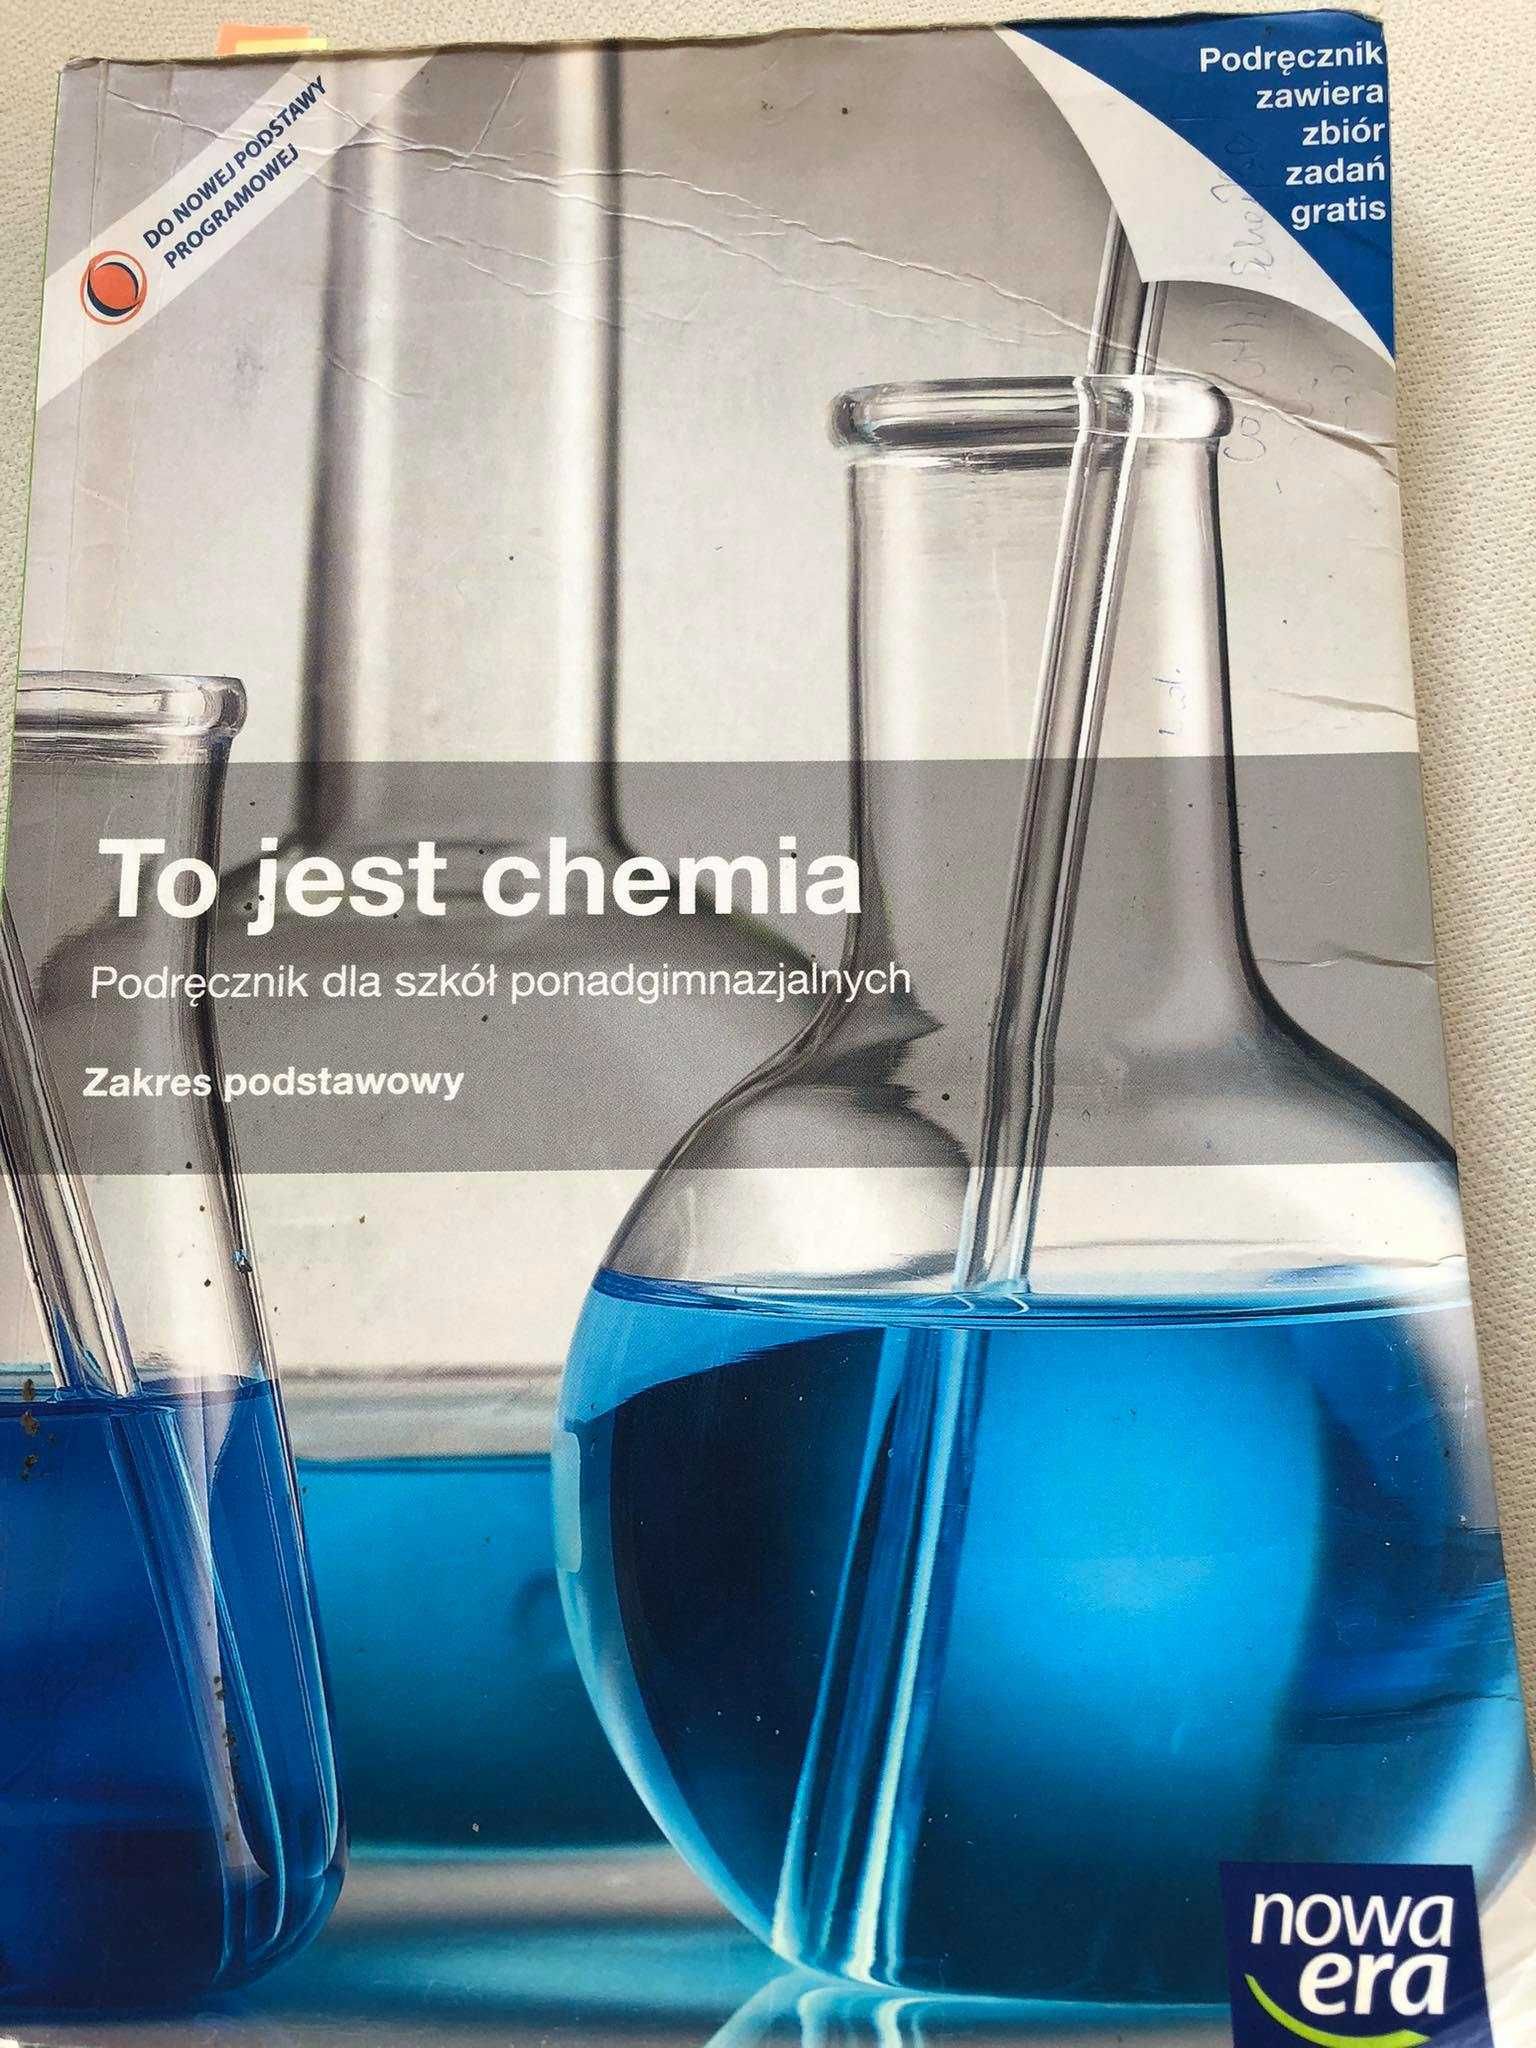 To jest chemia p.p.- podręcznik dla szkół ponadpodstawowych